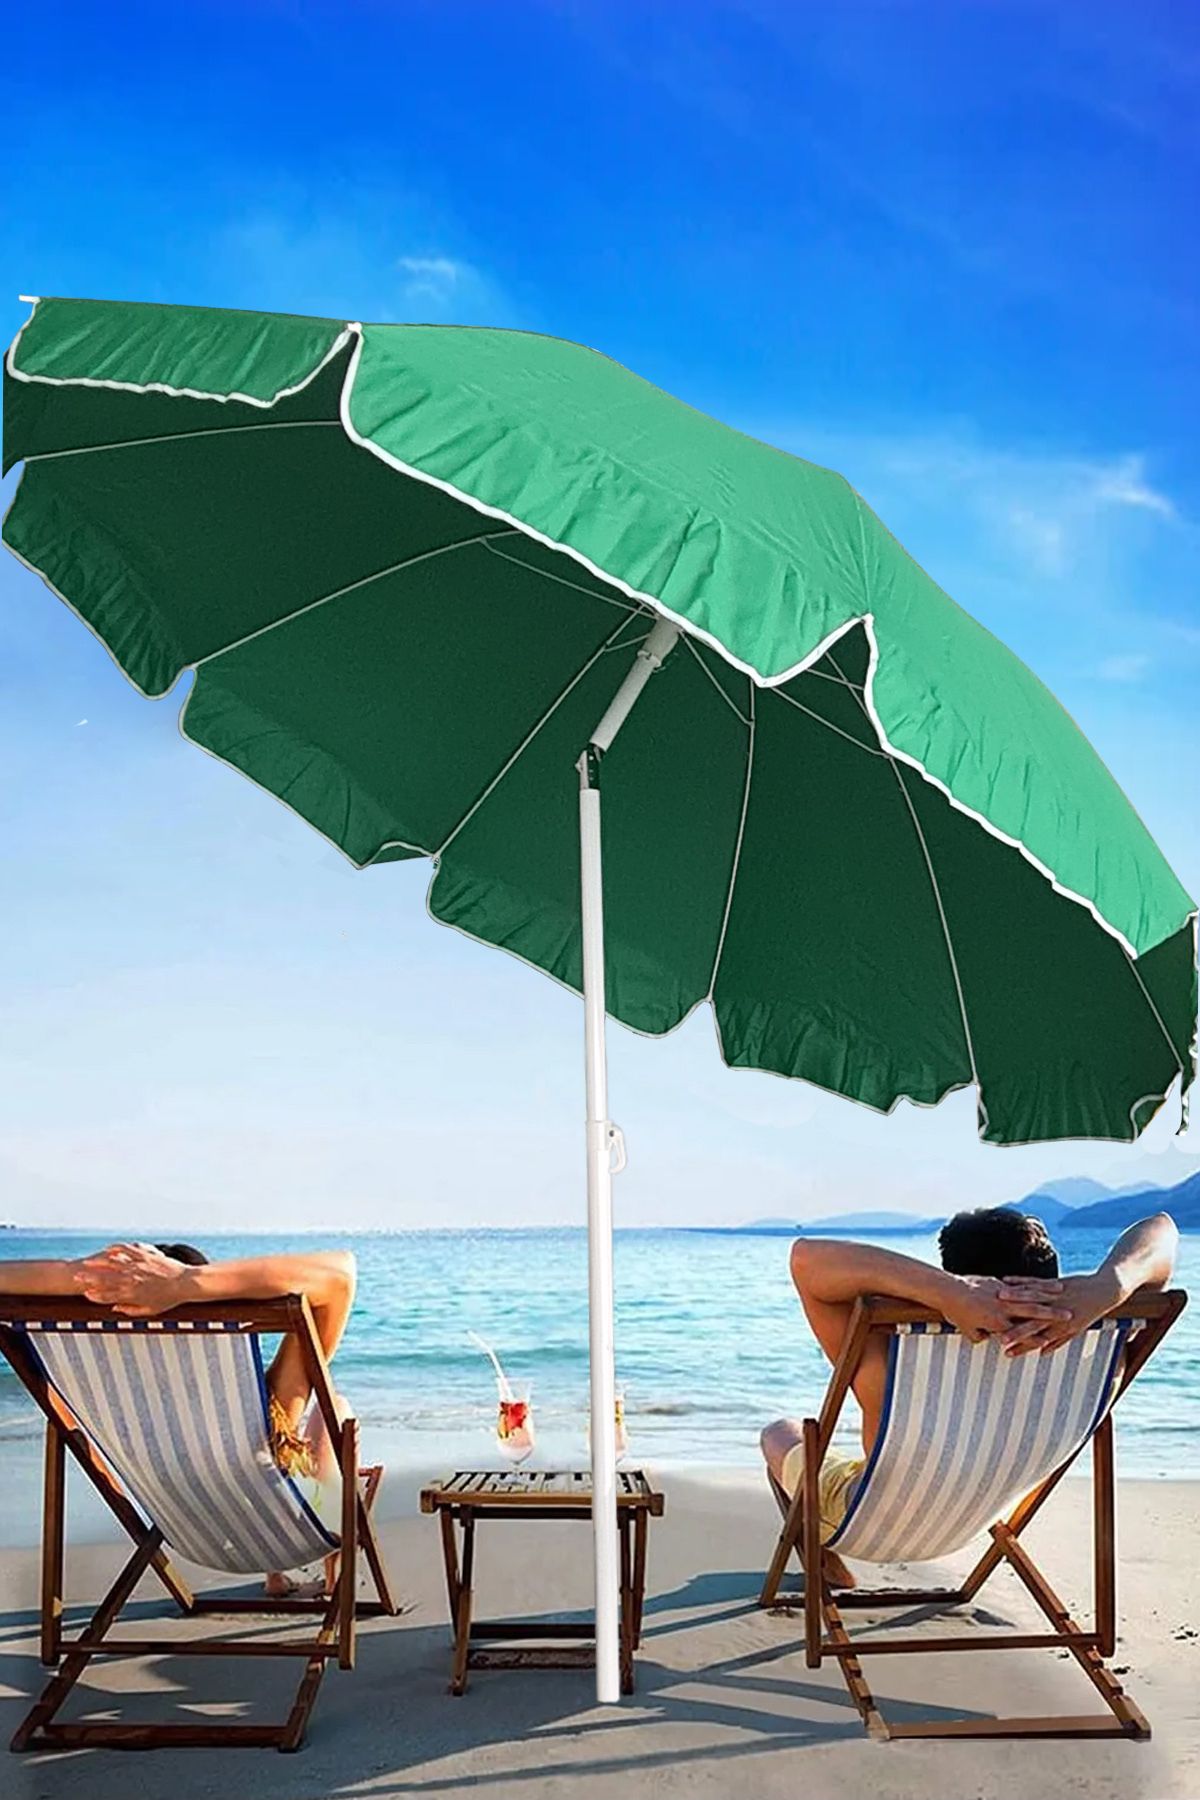 Binbirreyon Plaj Şemsiyesi Büyük Eğilebilen Bahçe Balkon Şemsiyesi Kılıflı 2,2m Çap 10 Telli Aa058